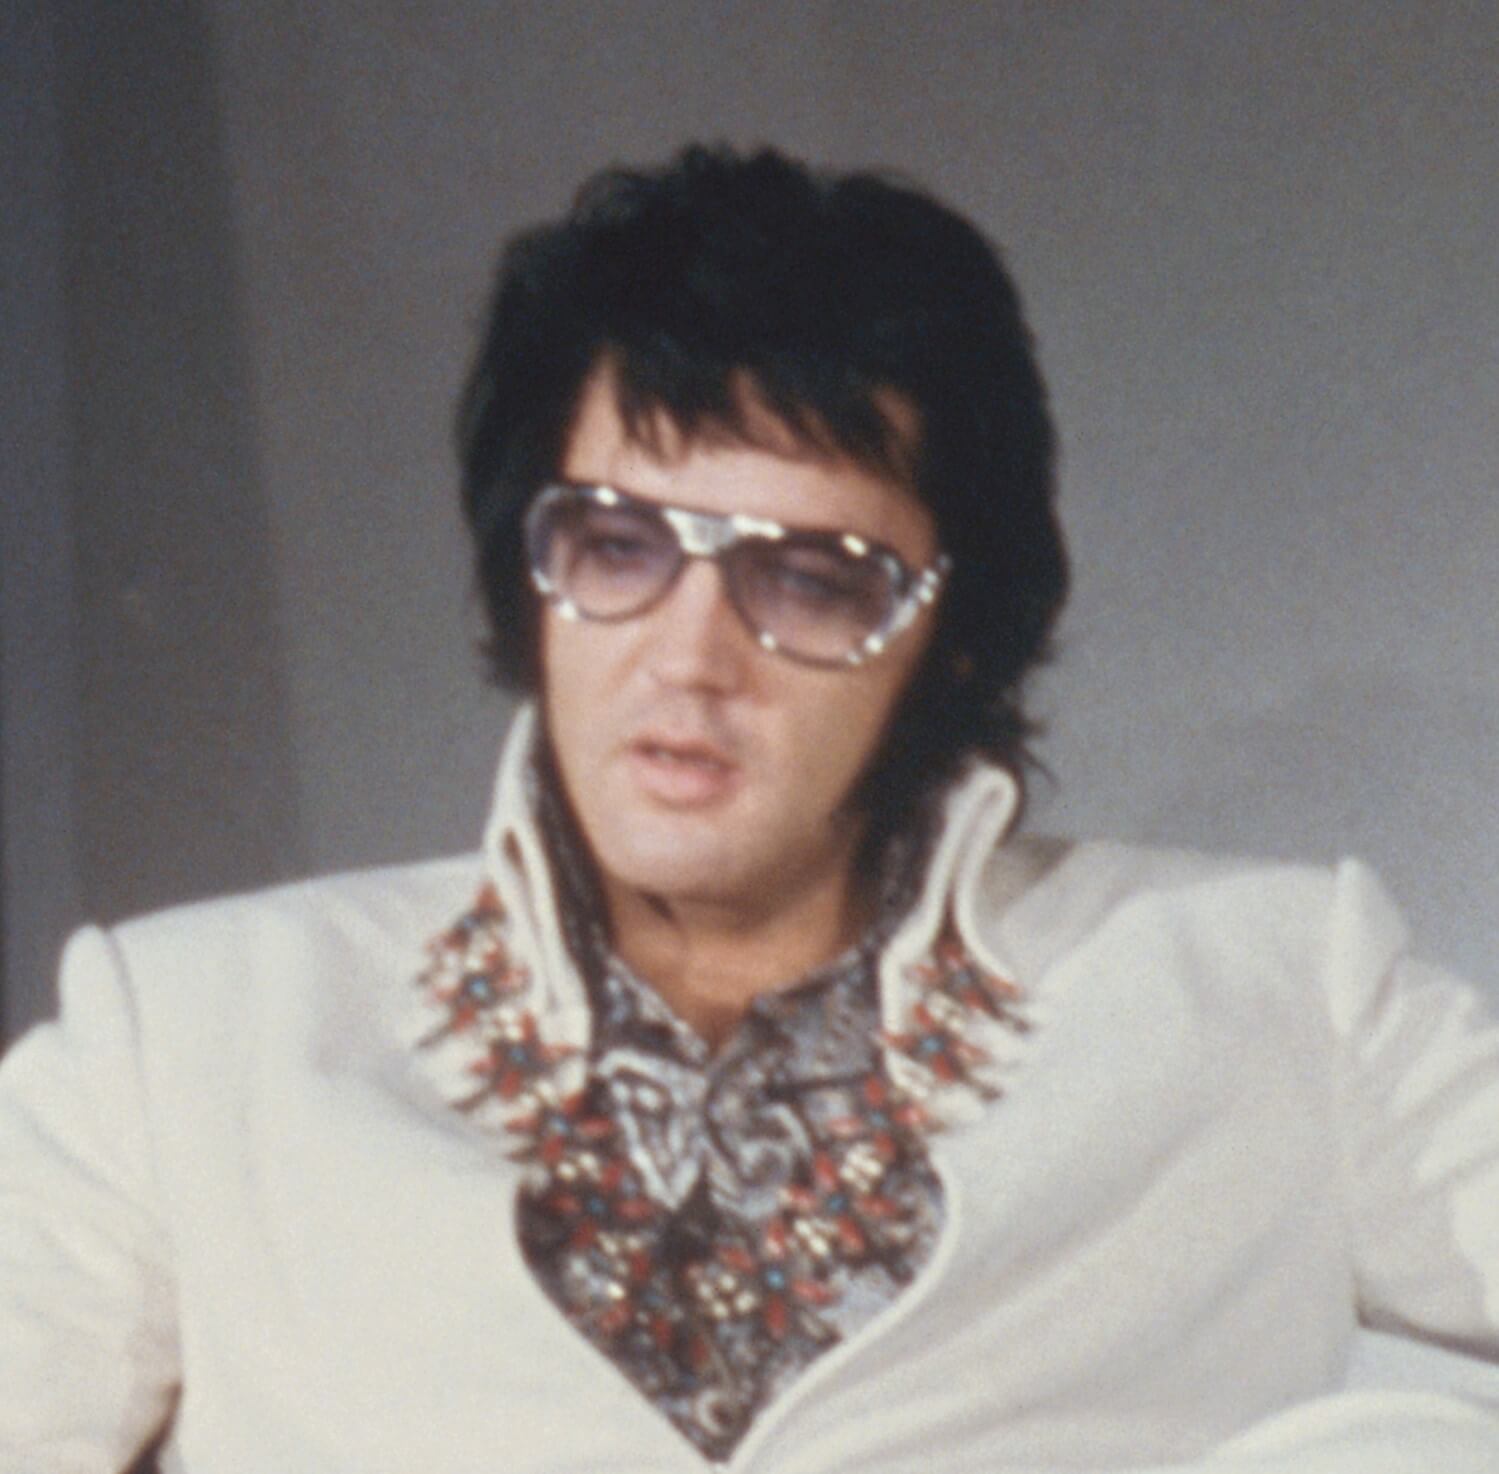 "All Shook Up" singer Elvis Presley in a jumpsuit